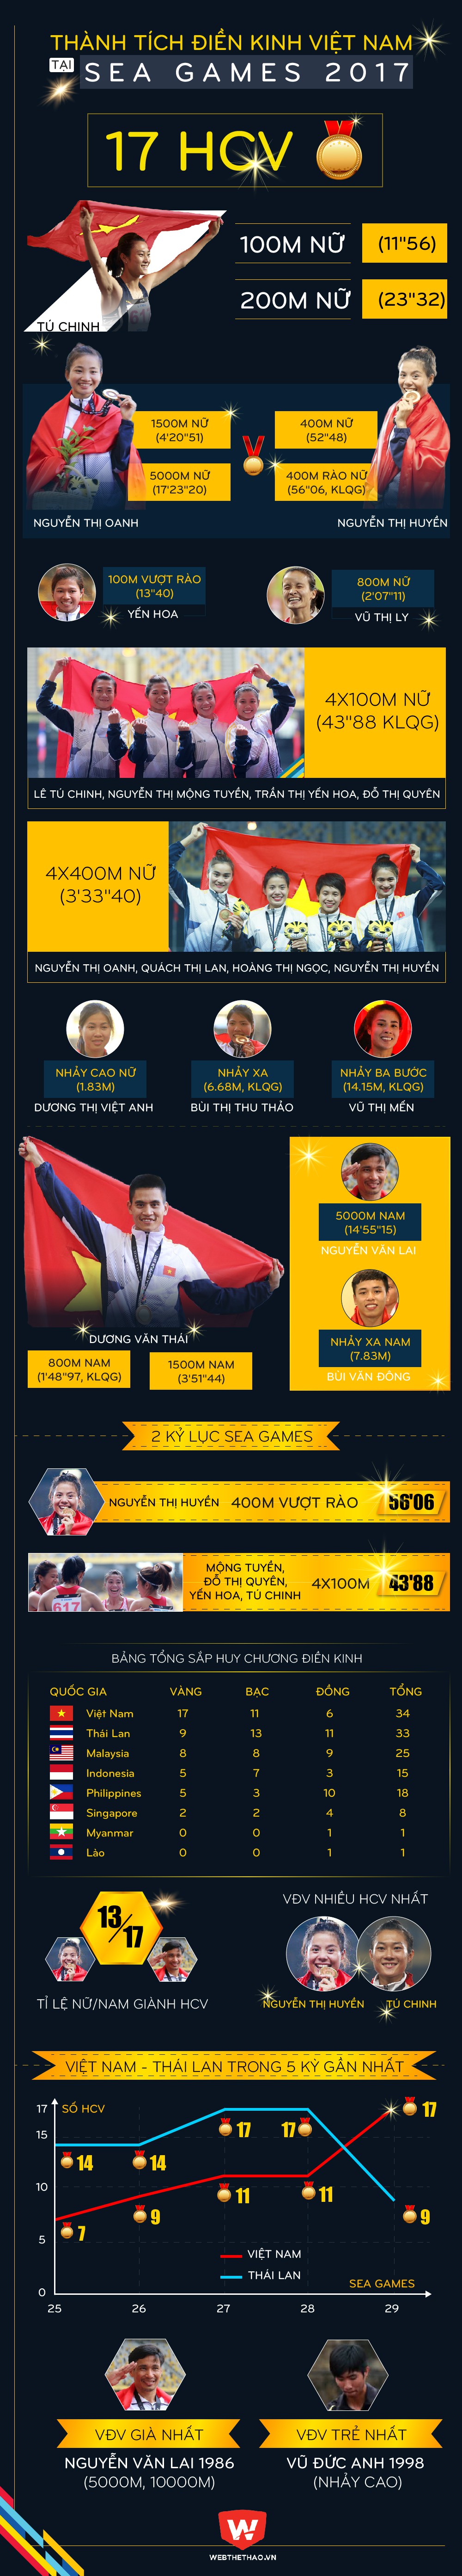 Infographic 17 HCV, 2 kỷ lục SEA Games của điền kinh Việt Nam